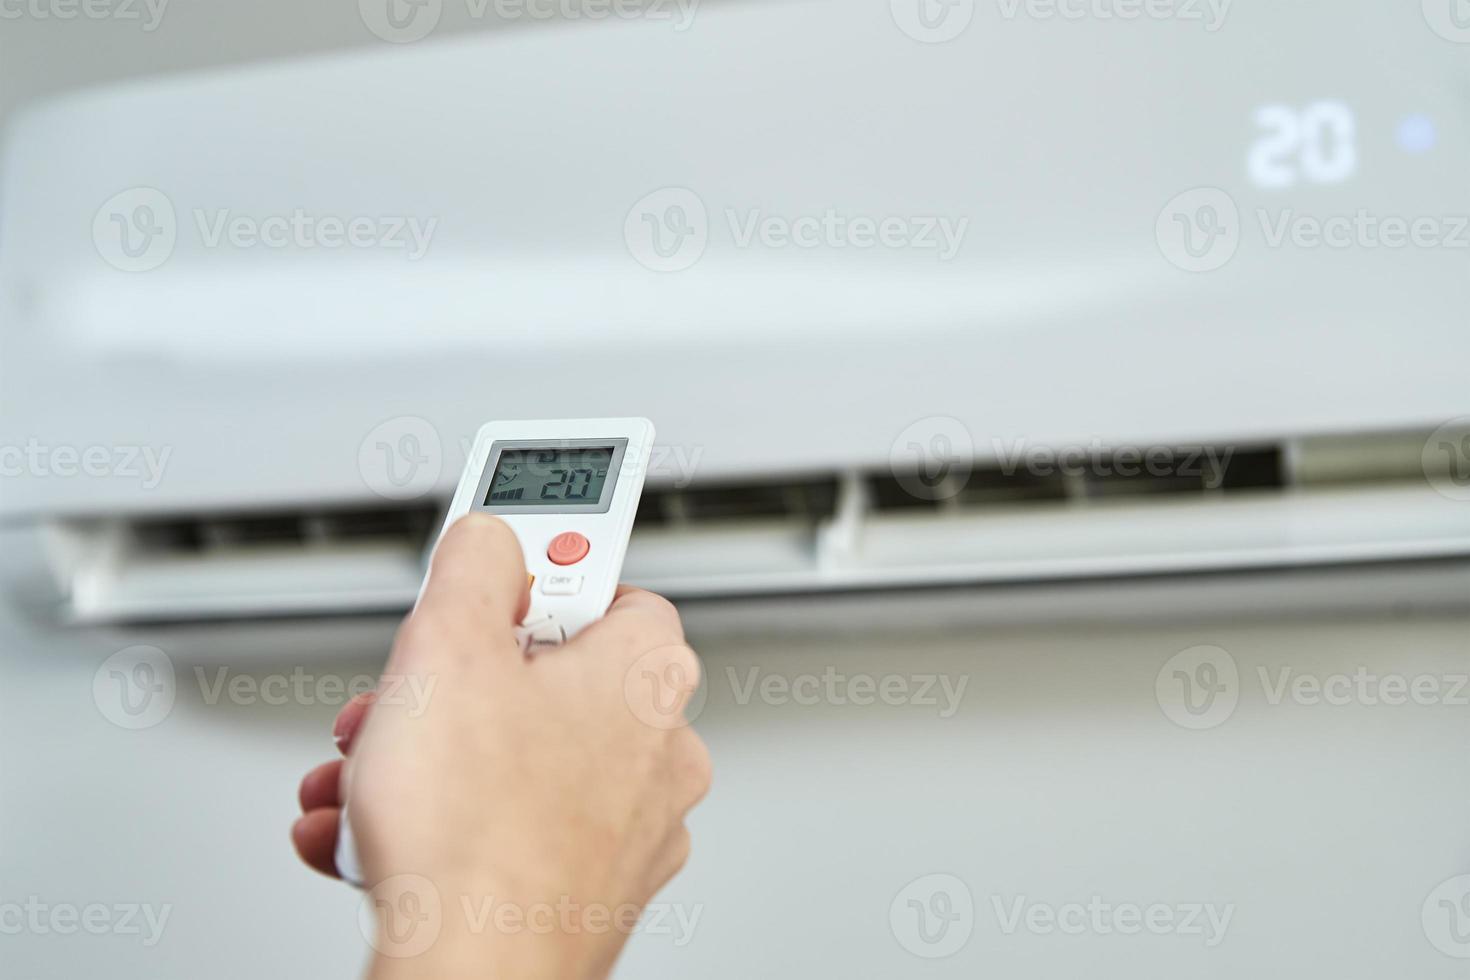 réglage manuel de la température sur le climatiseur photo